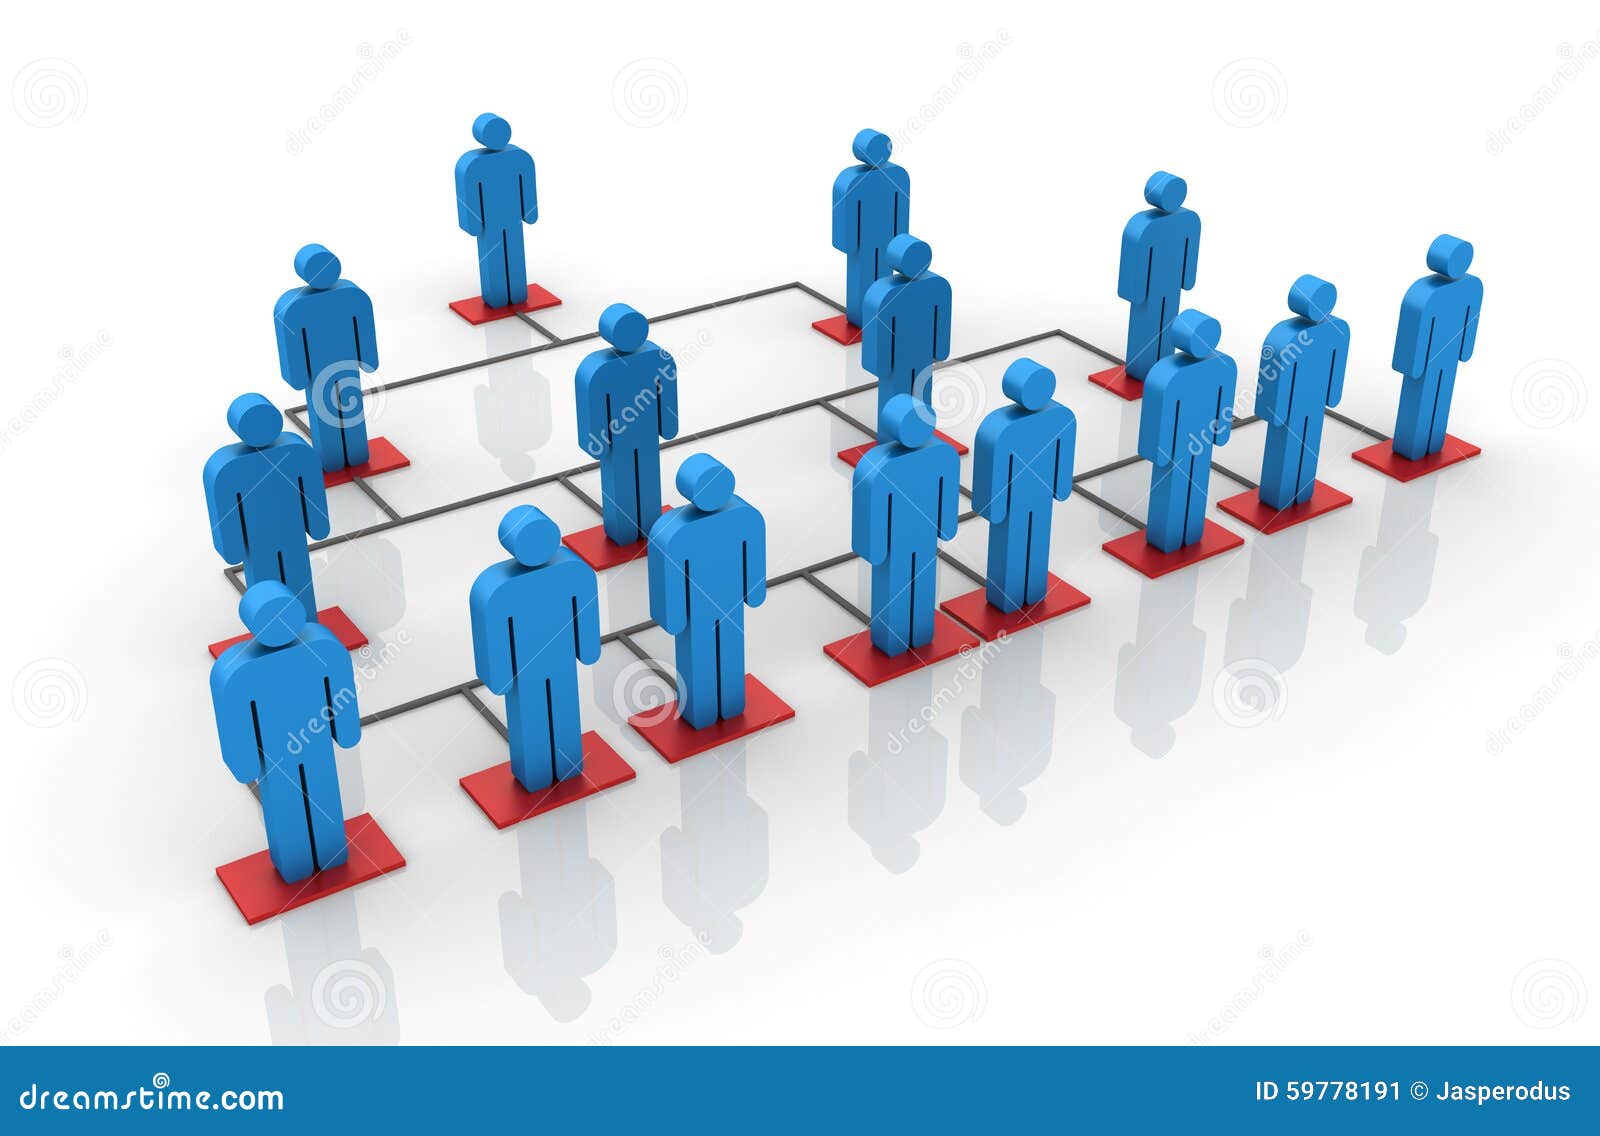 Teamwork - Network stock illustration. Illustration of peers - 59778191